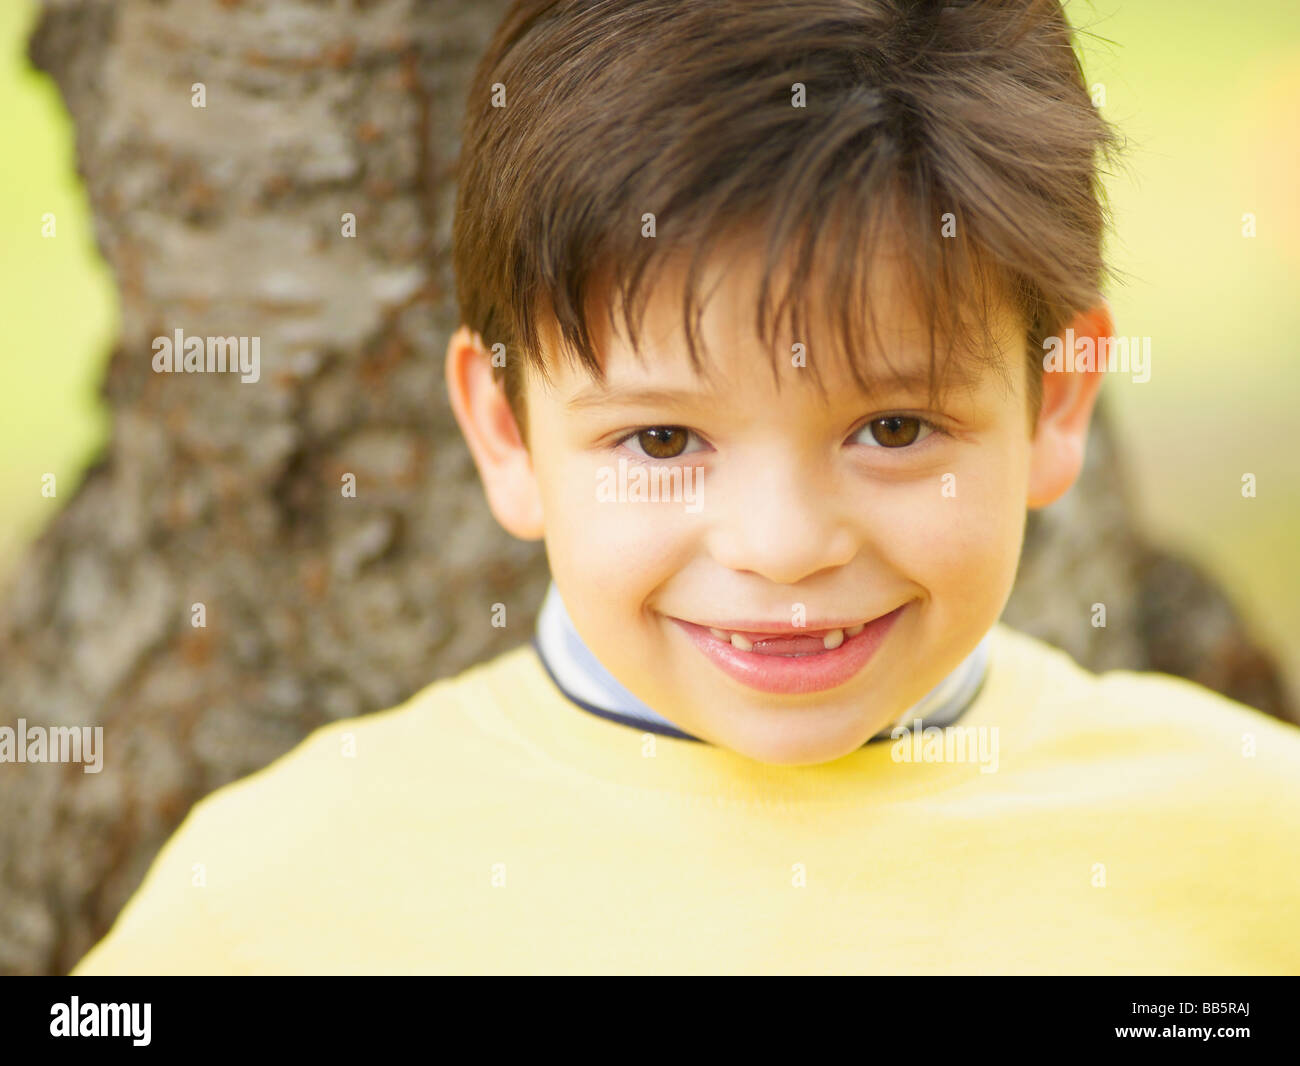 Toothless Hispanic boy smiling Stock Photo